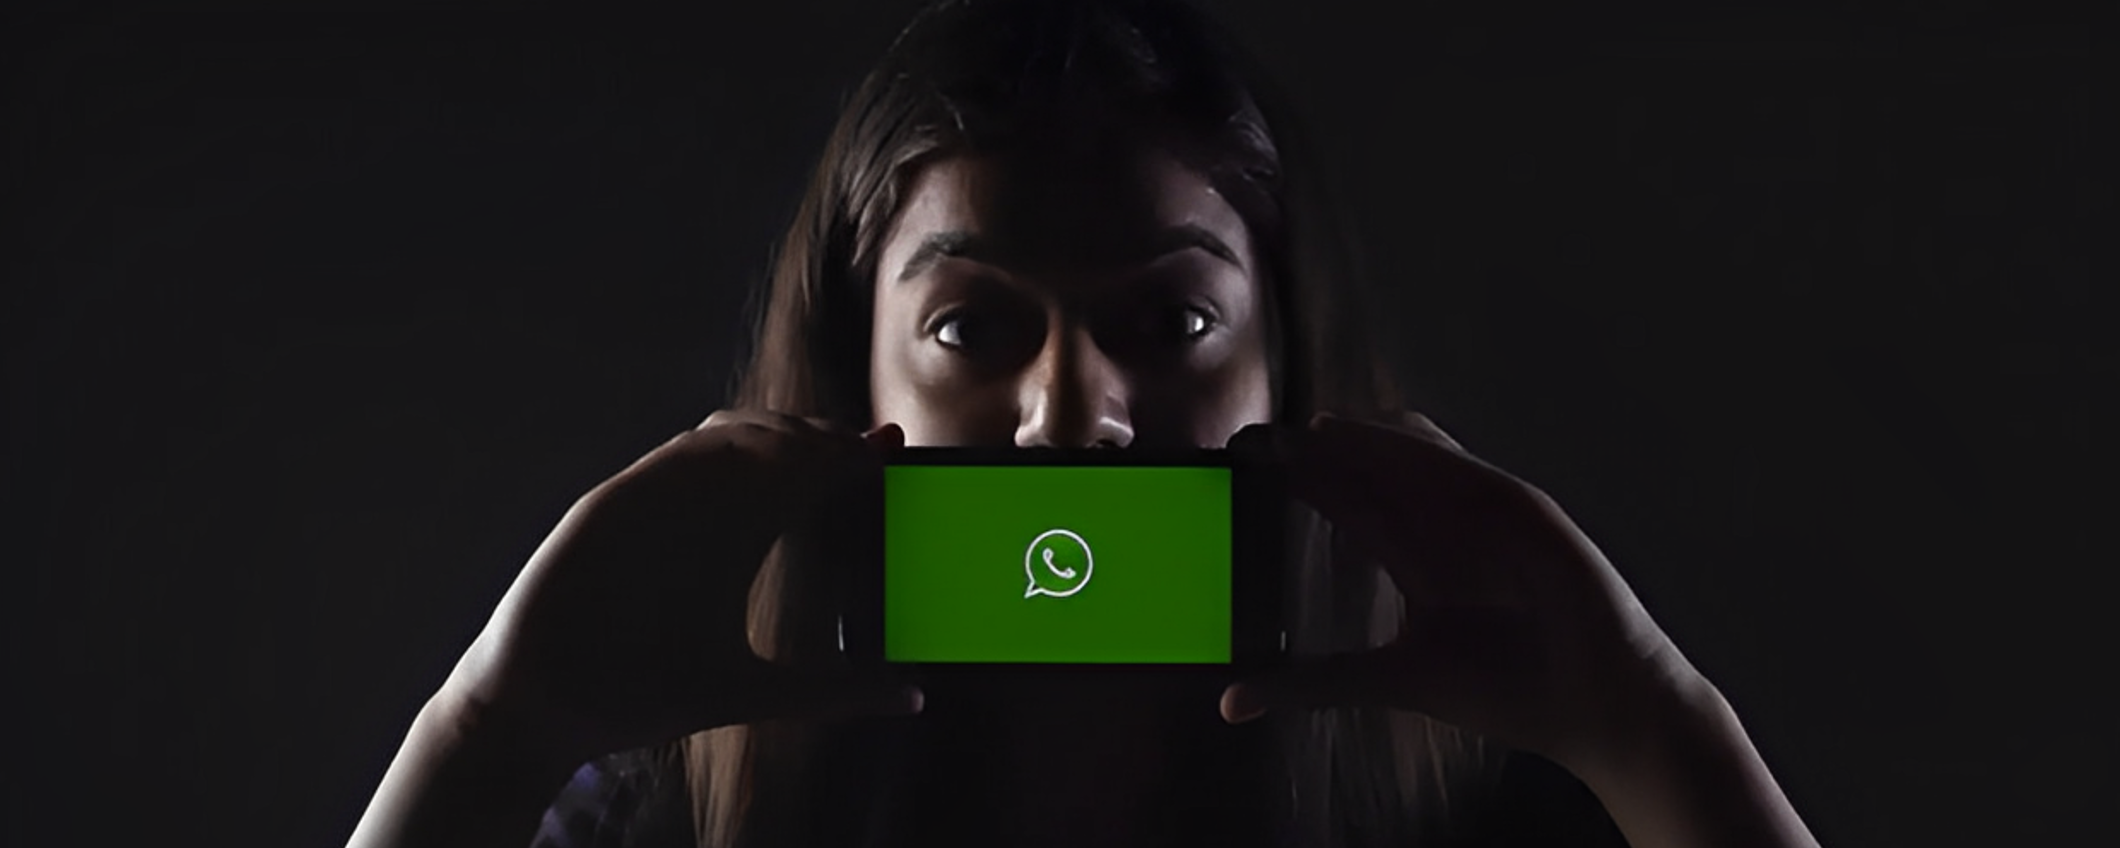 WhatsApp: NON rispondete a questo messaggio, o ADDIO account